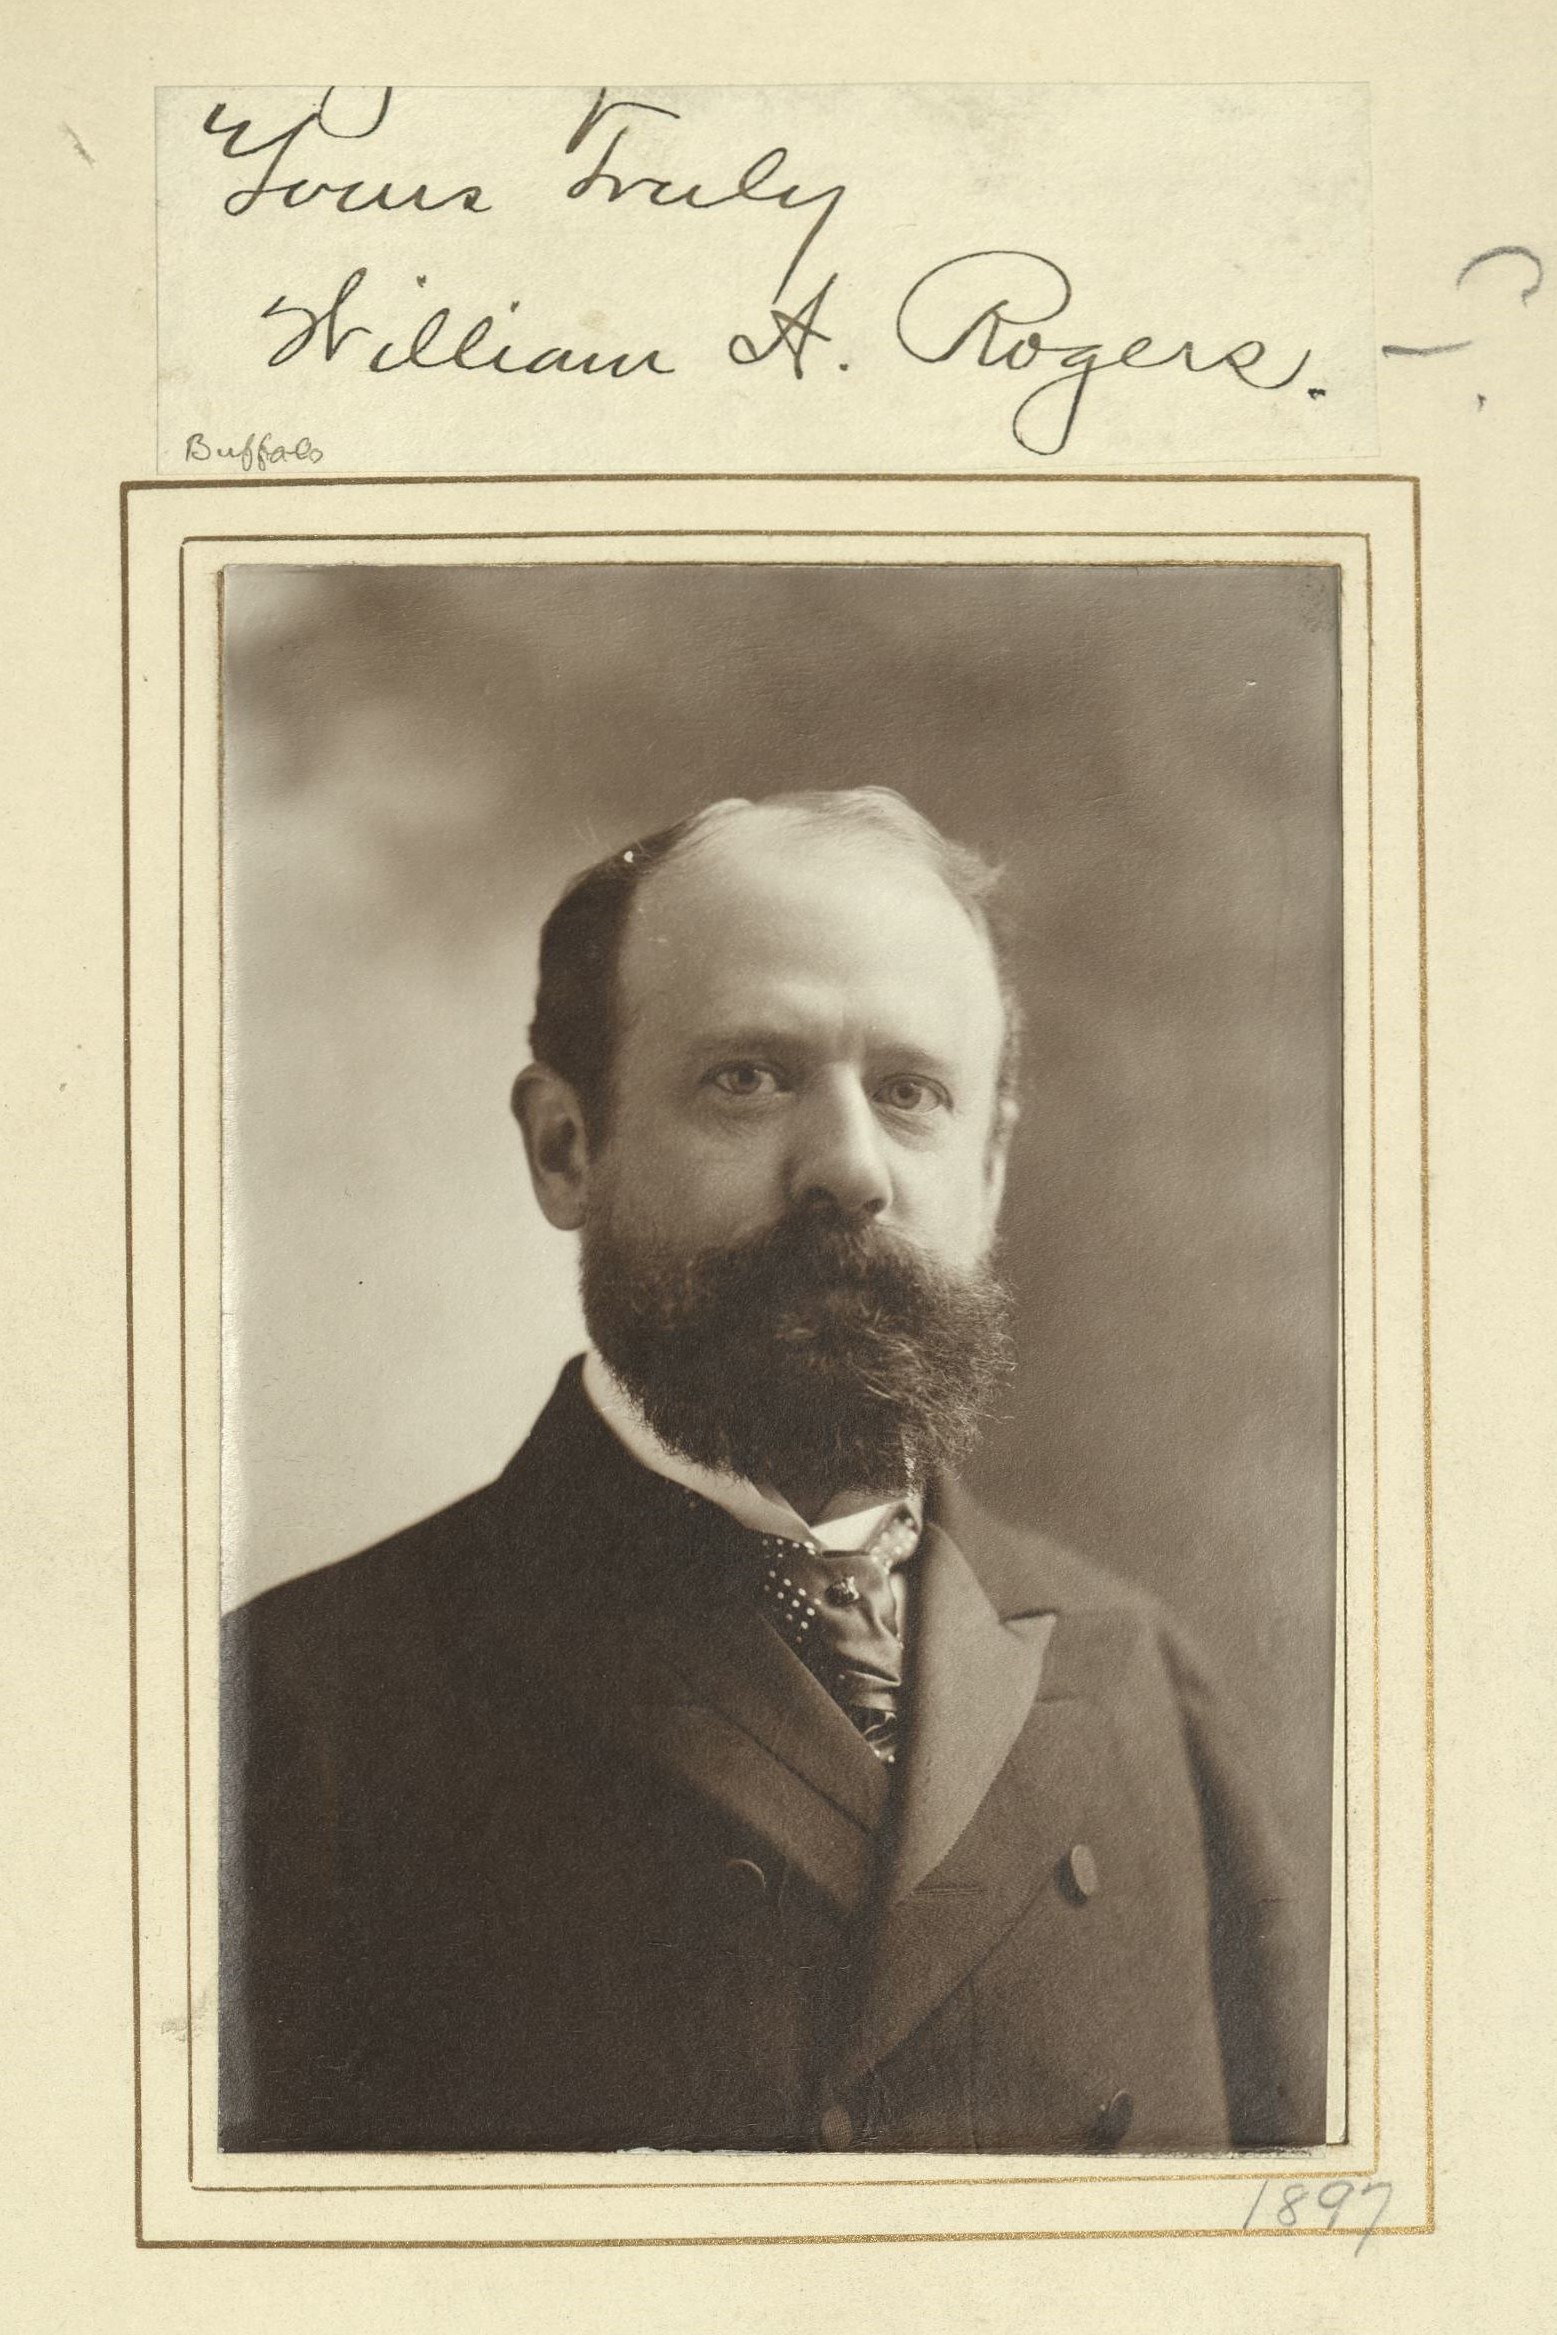 Member portrait of William Arthur Rogers